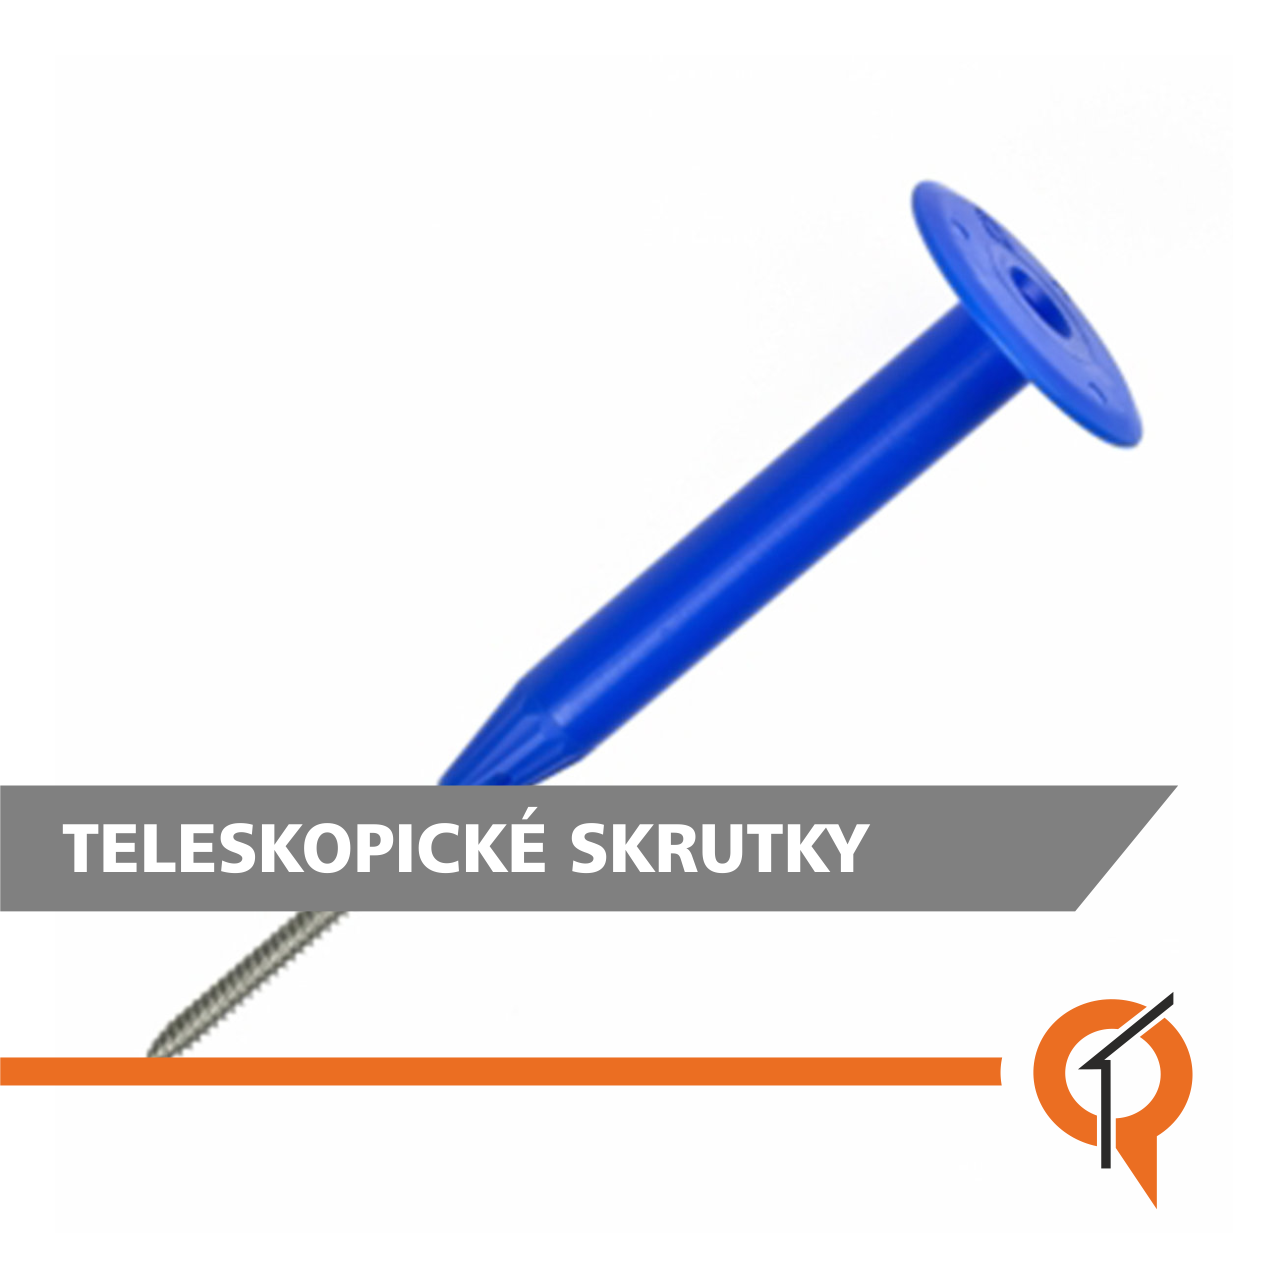 teleskopicke_skrutky_qtrend